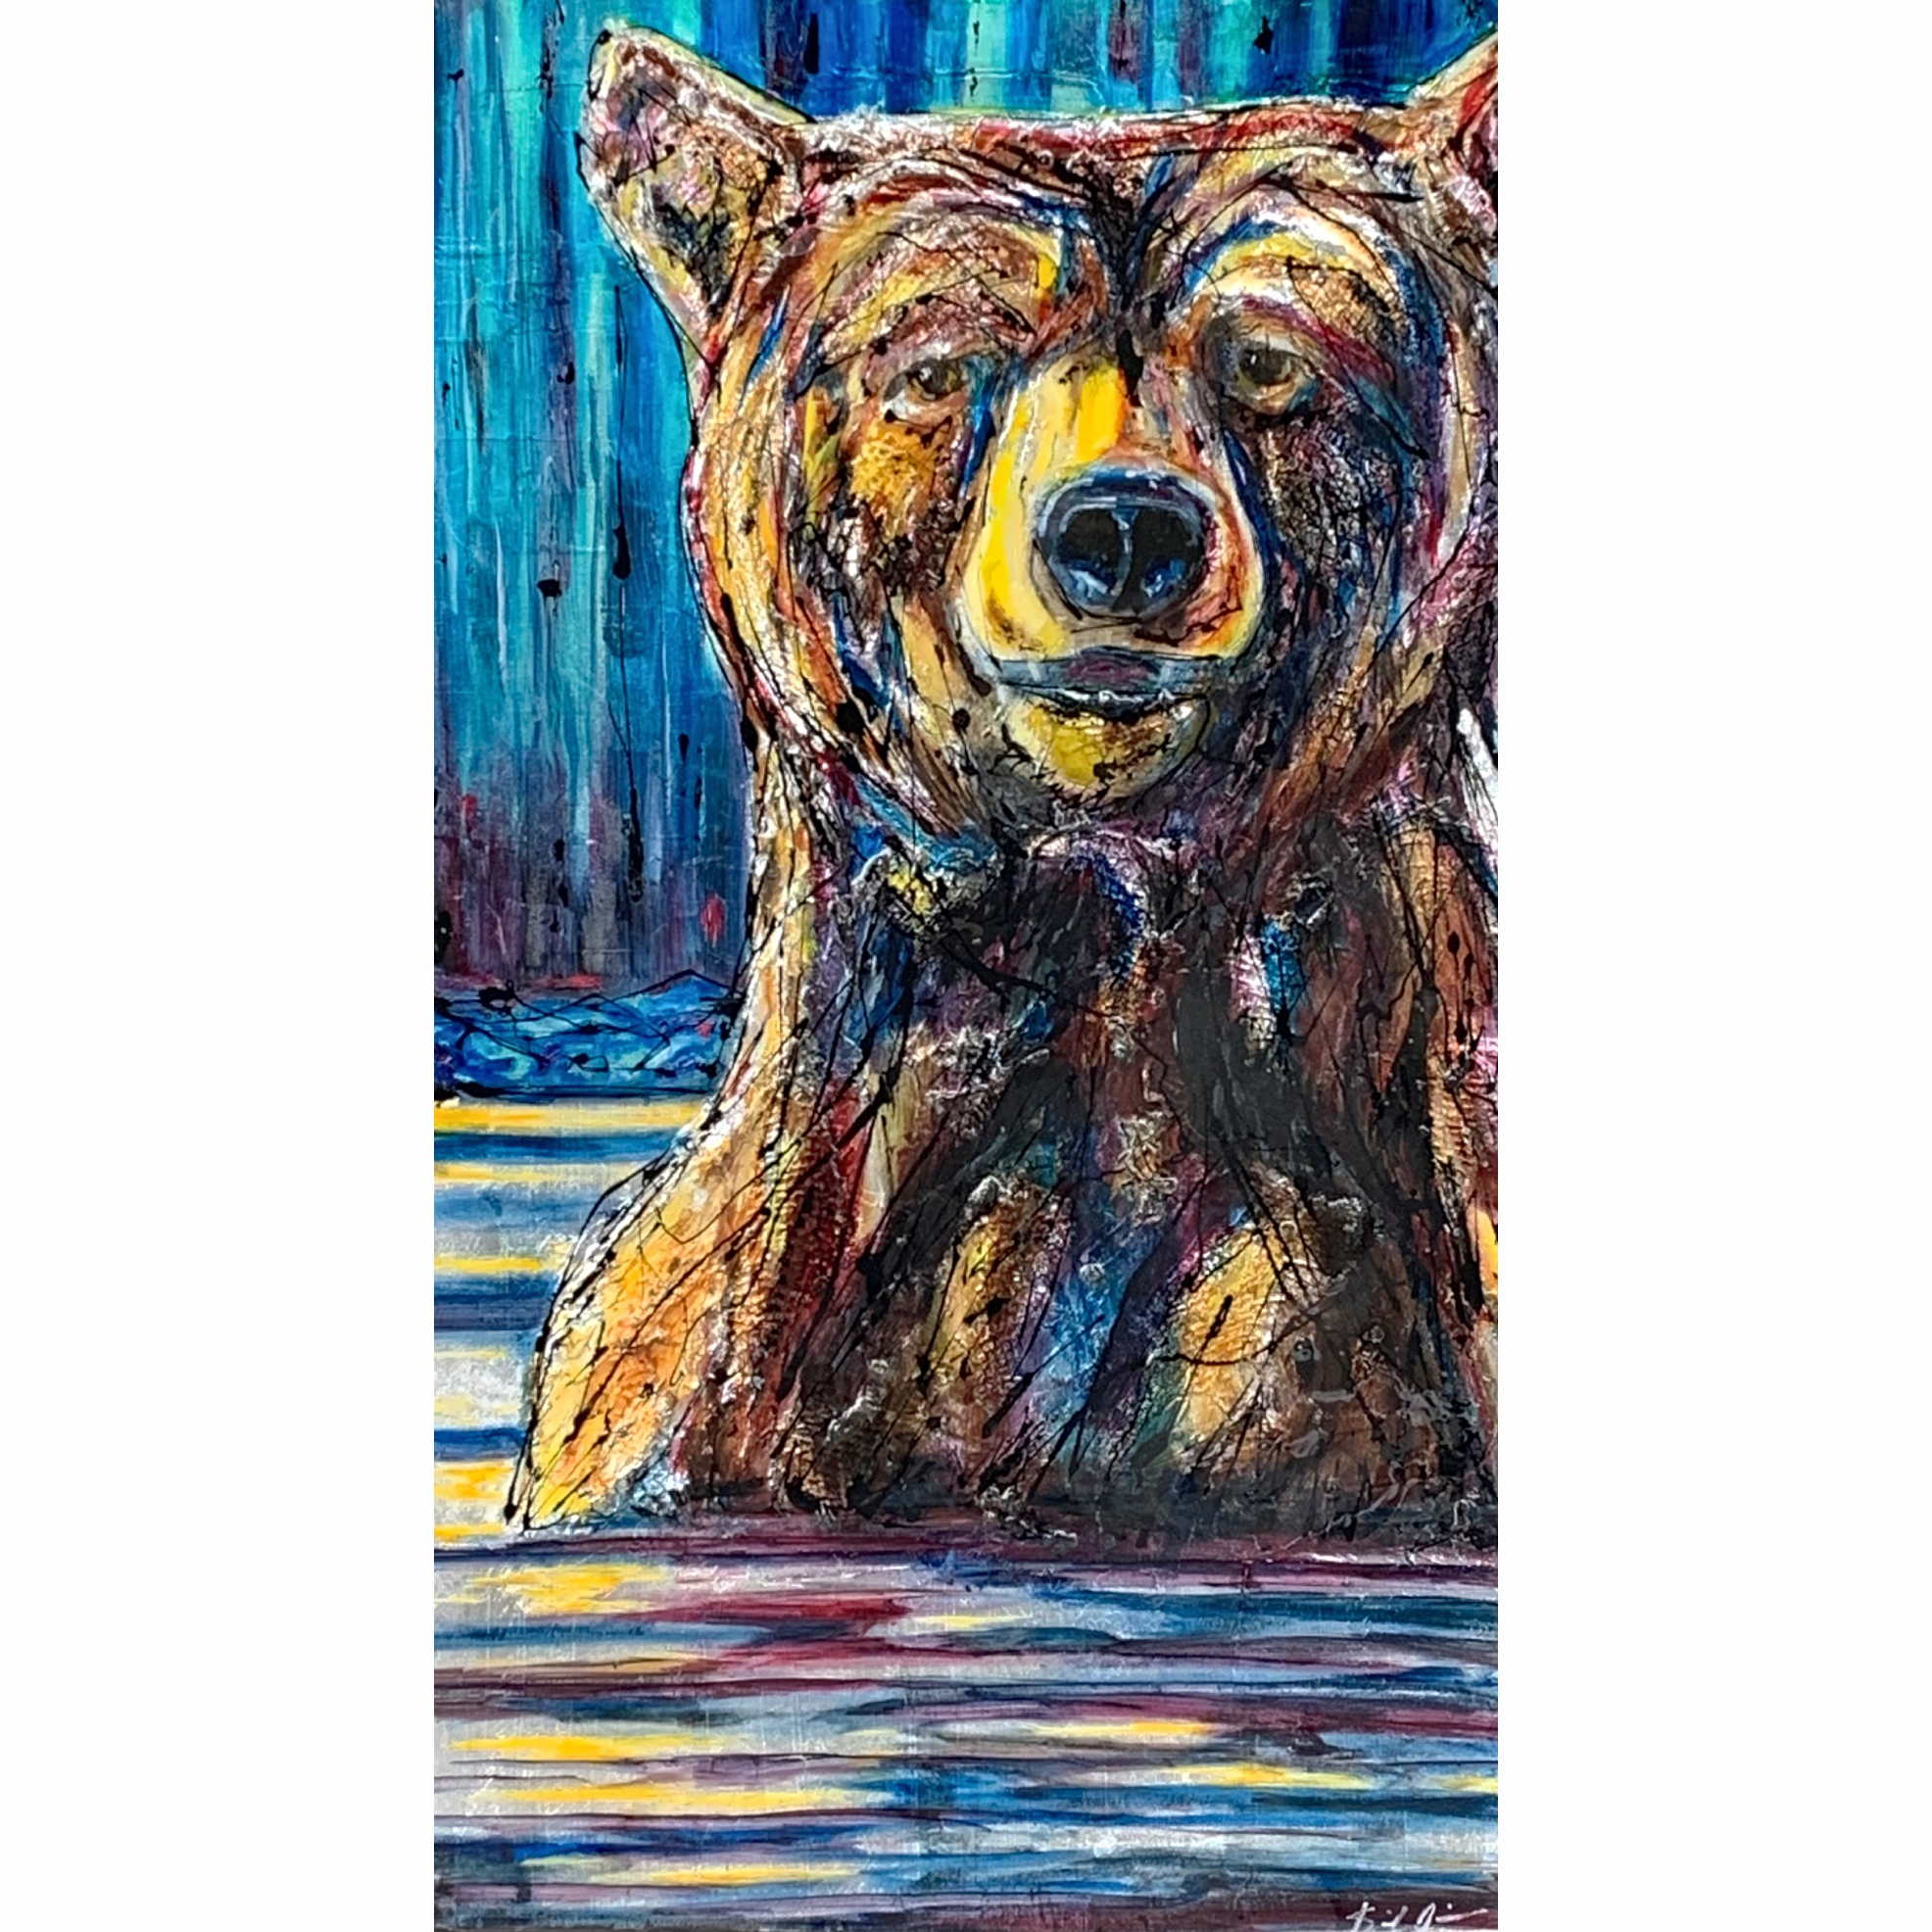 Radio Talk, original mixed media swimming brown bear painting by David Zimmerman at Effusion Art Gallery in Invermere, BC.